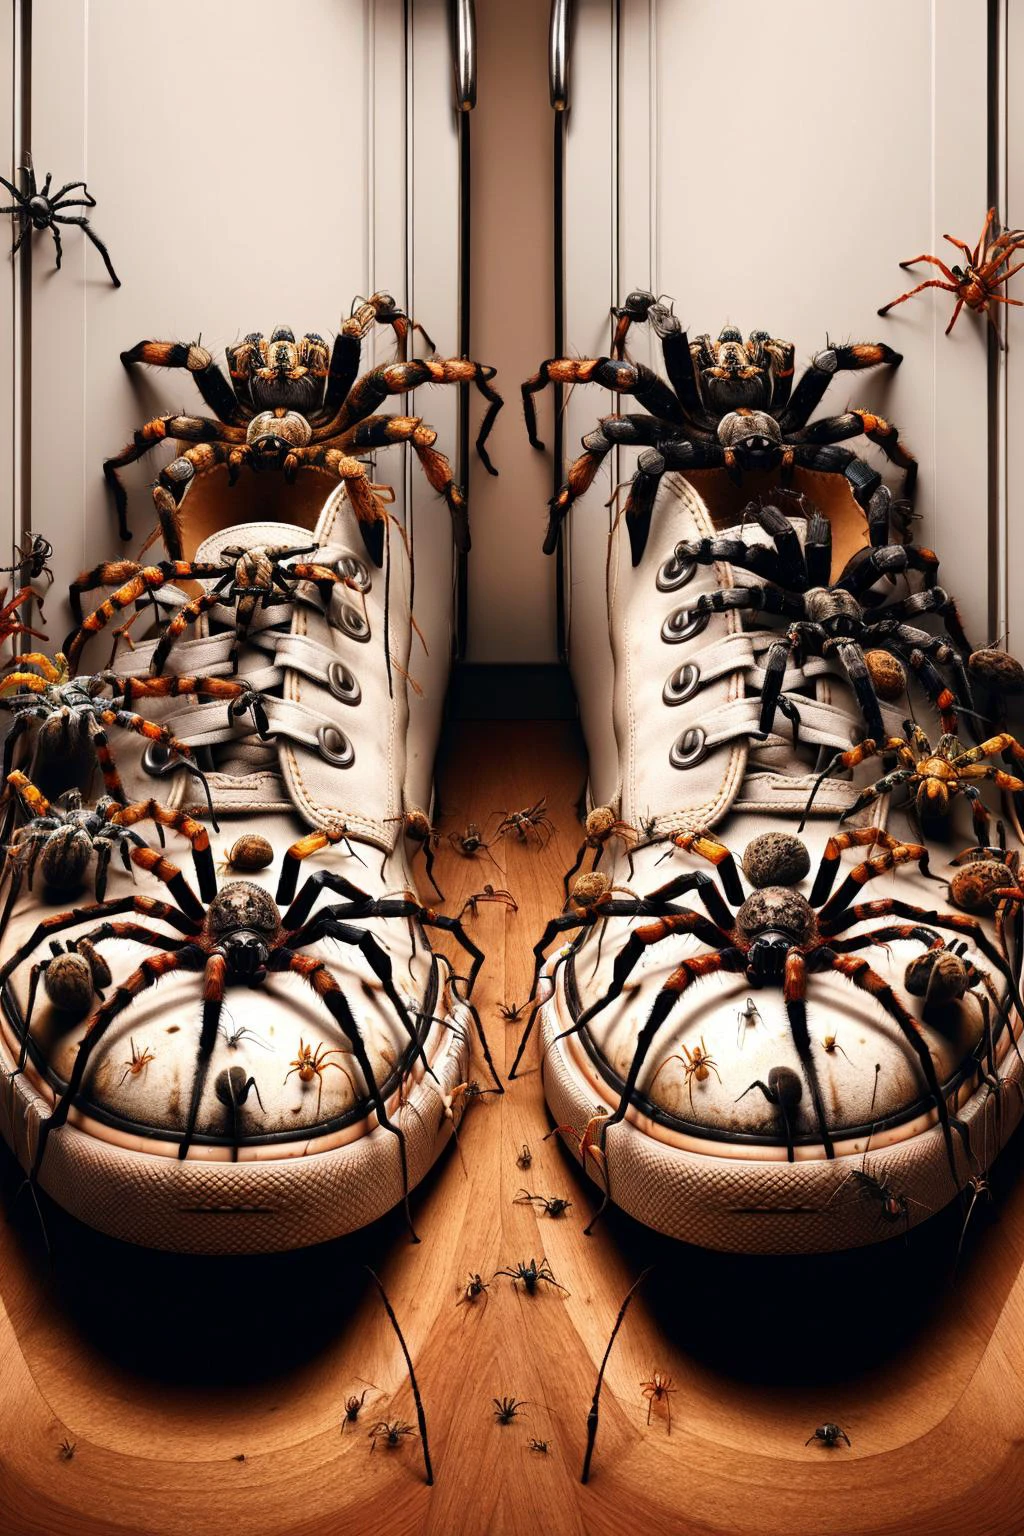 Ais-spiderz على زوج من الأحذية, في خزانة فوضوية 